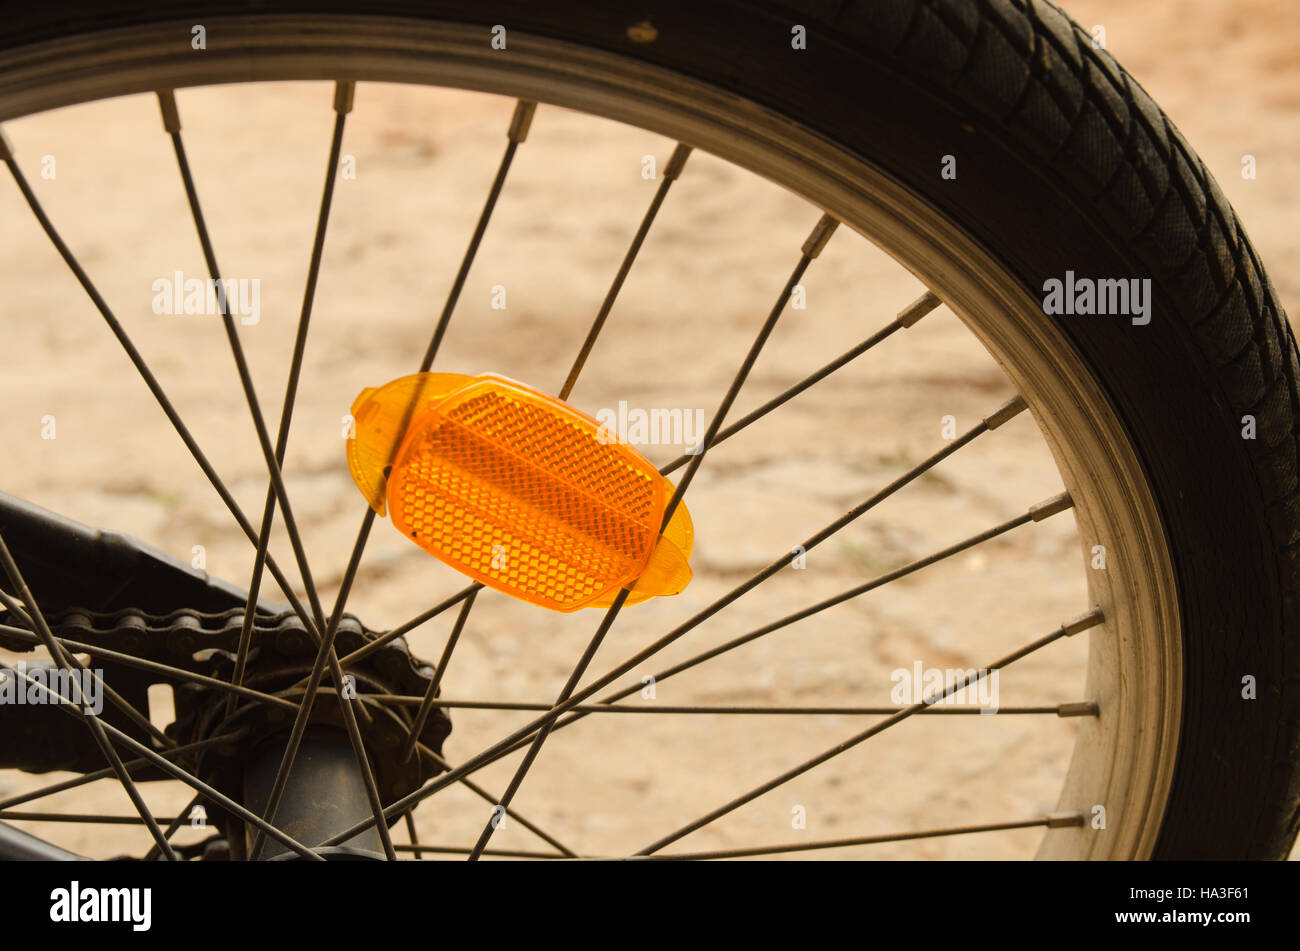 Fahrradspeichen -Fotos und -Bildmaterial in hoher Auflösung – Alamy